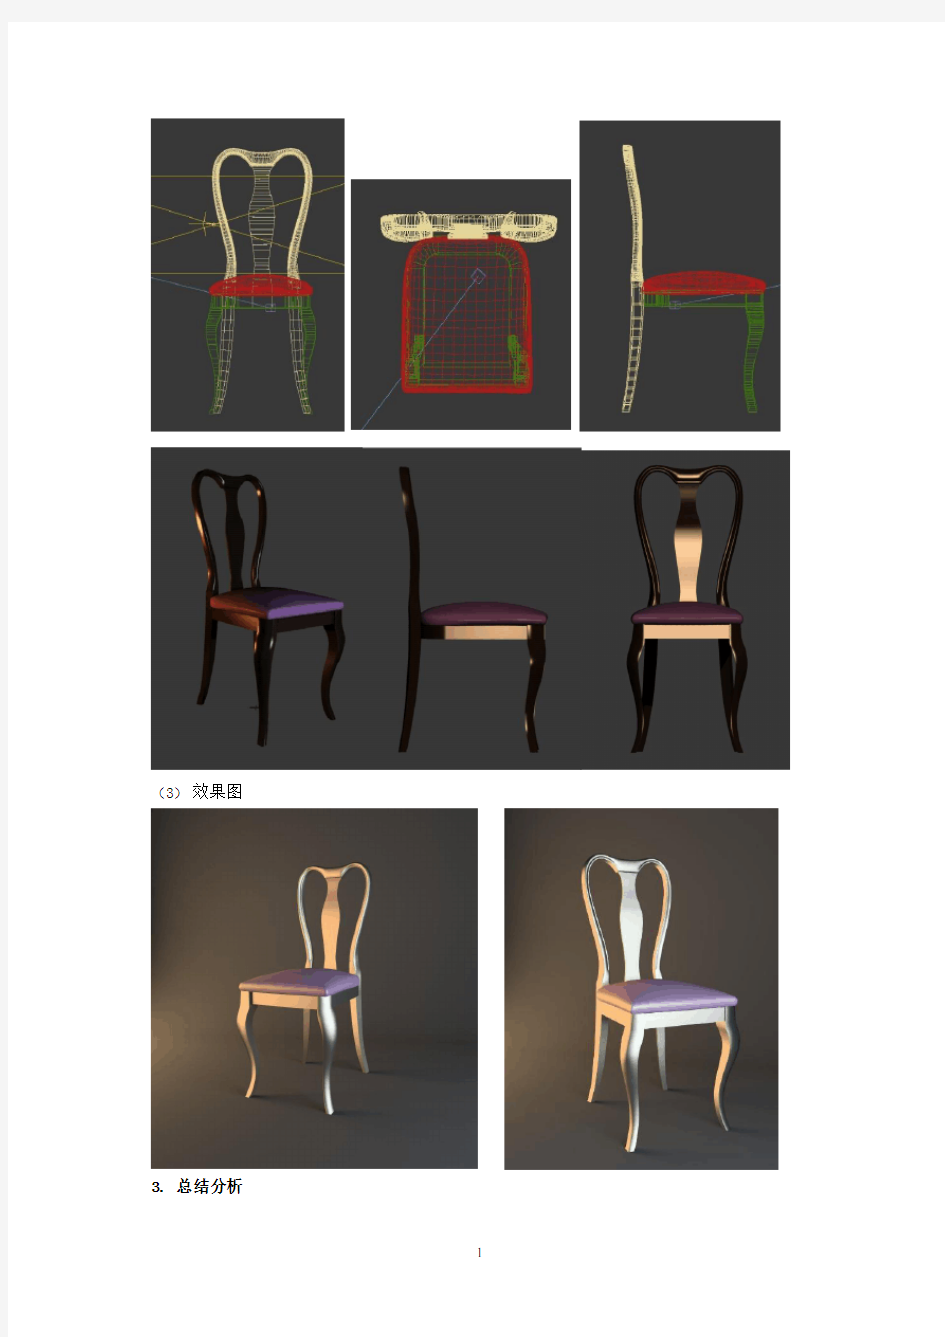 人体工程学座椅设计说明1